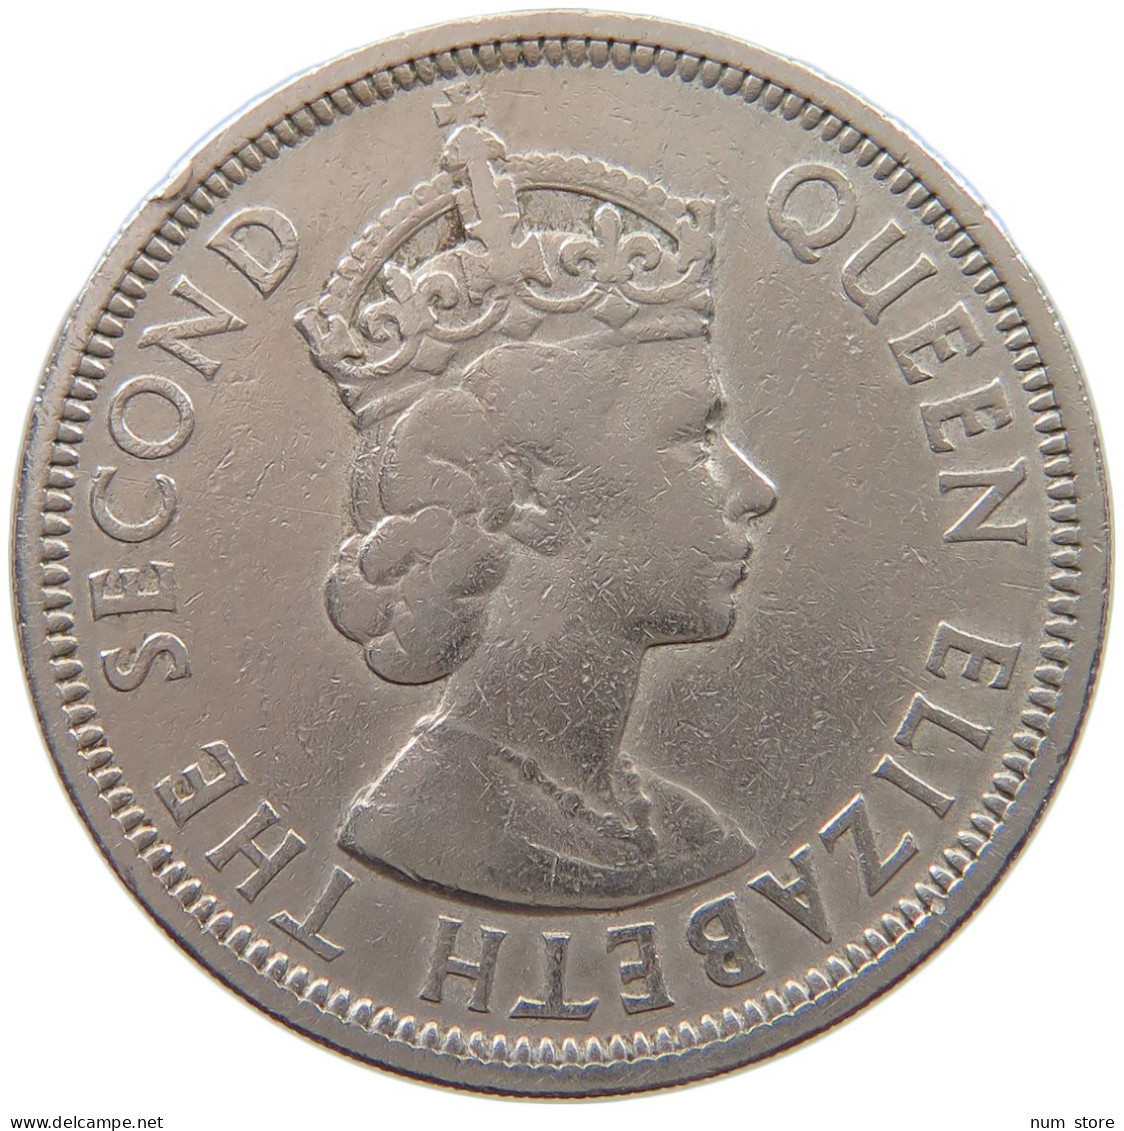 BRITISH CARIBBEAN TERRITORIES 50 CENTS 1955 Elizabeth II. (1952-2022) #a060 0607 - British Caribbean Territories